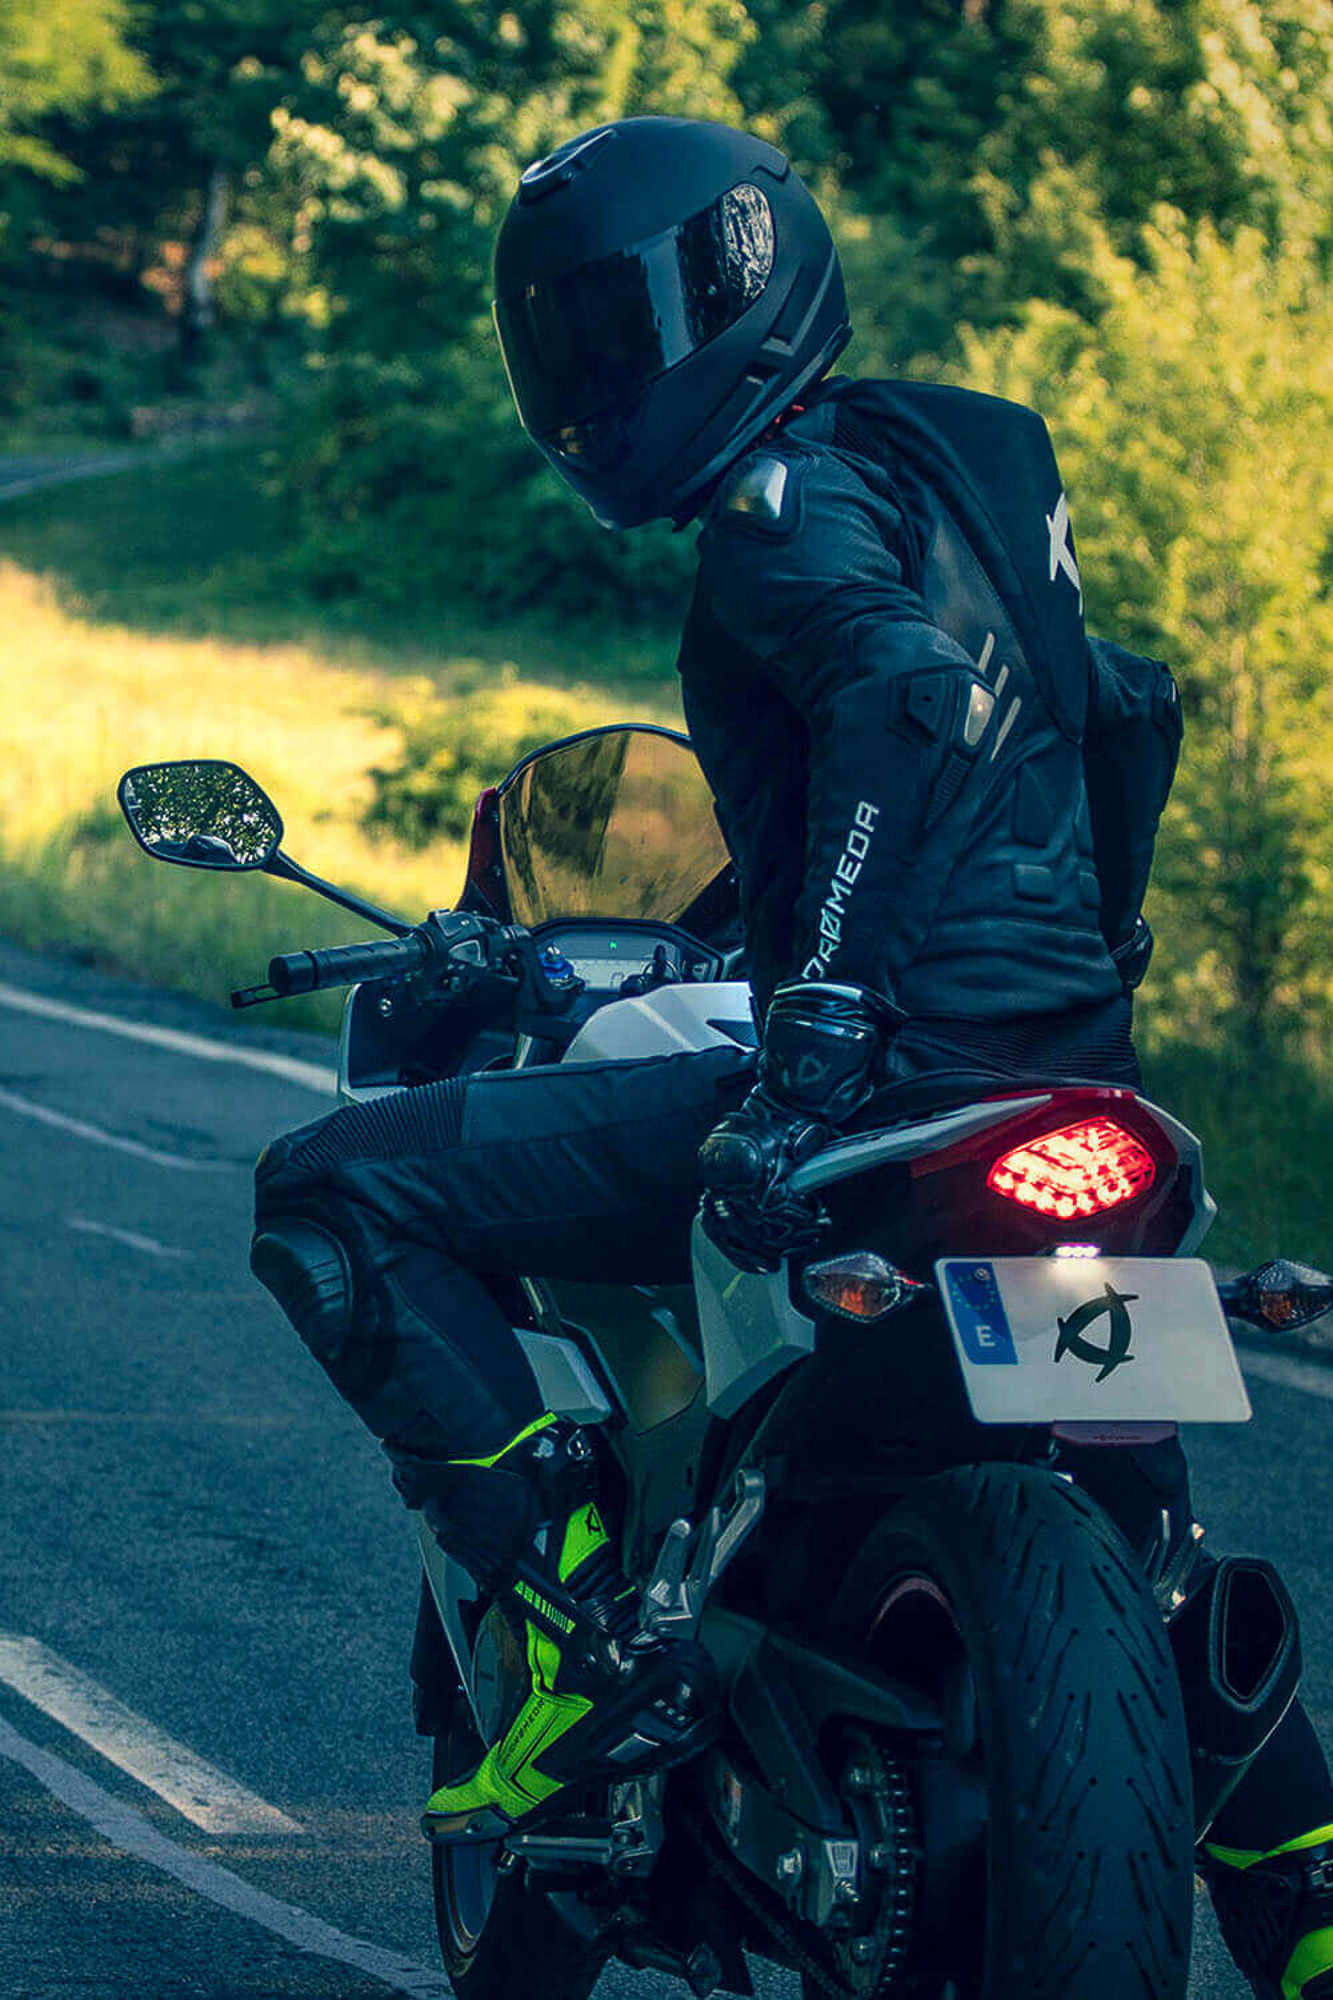 andromeda moto nearx vegan racing suit